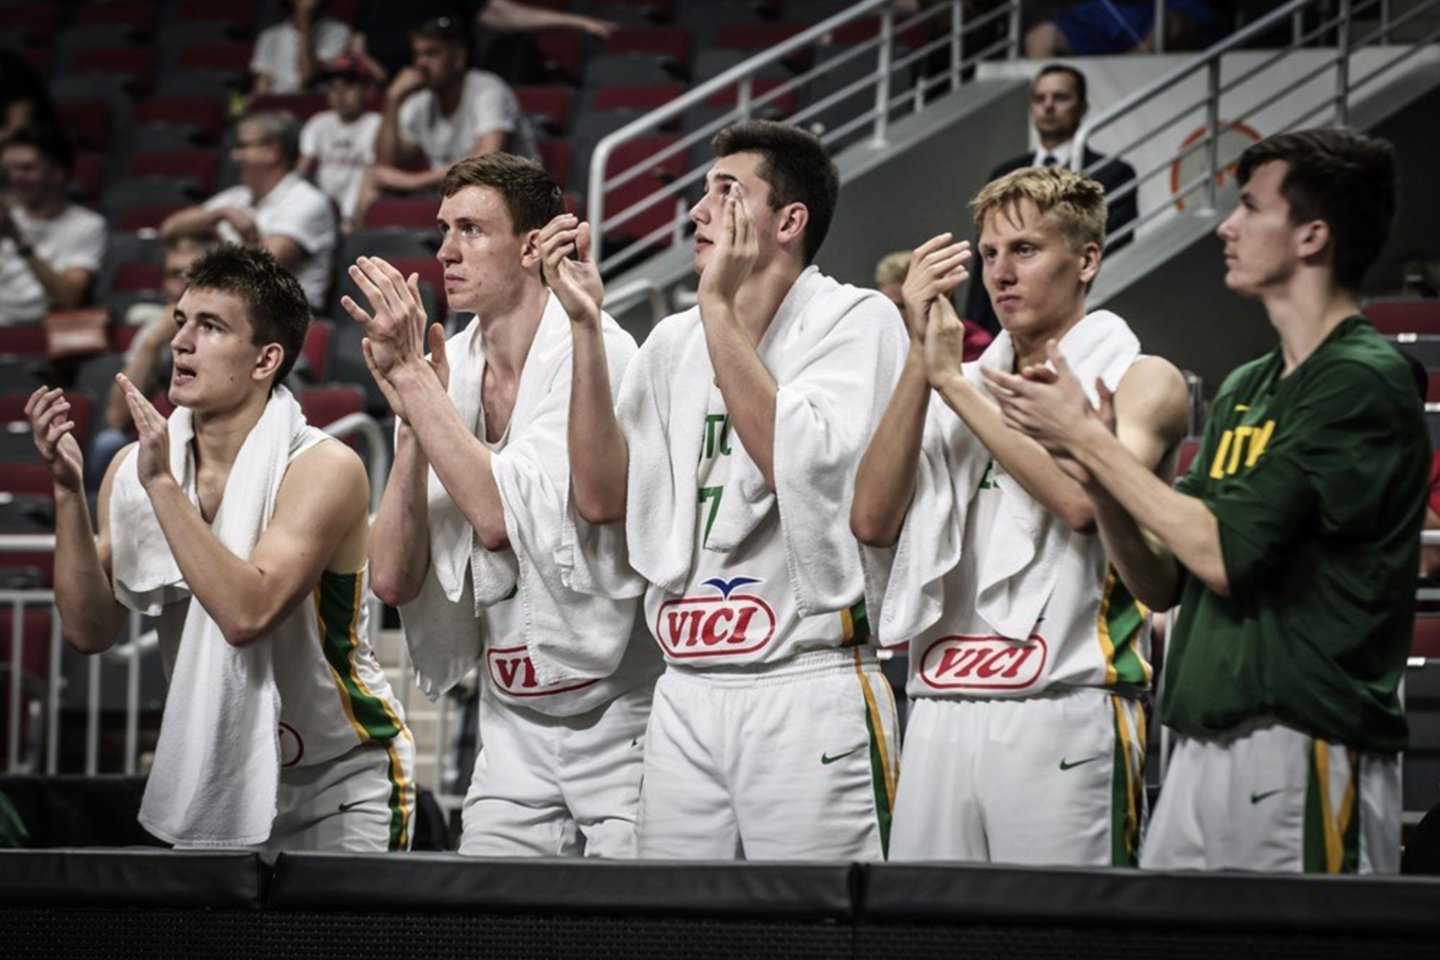 Lietuvos 18-mečių vaikinų krepšinio rinktinė sutriuškino Vokietiją ir iškovojo kelialapį į pasaulio čempionatą.<br> FIBA.com nuotr.